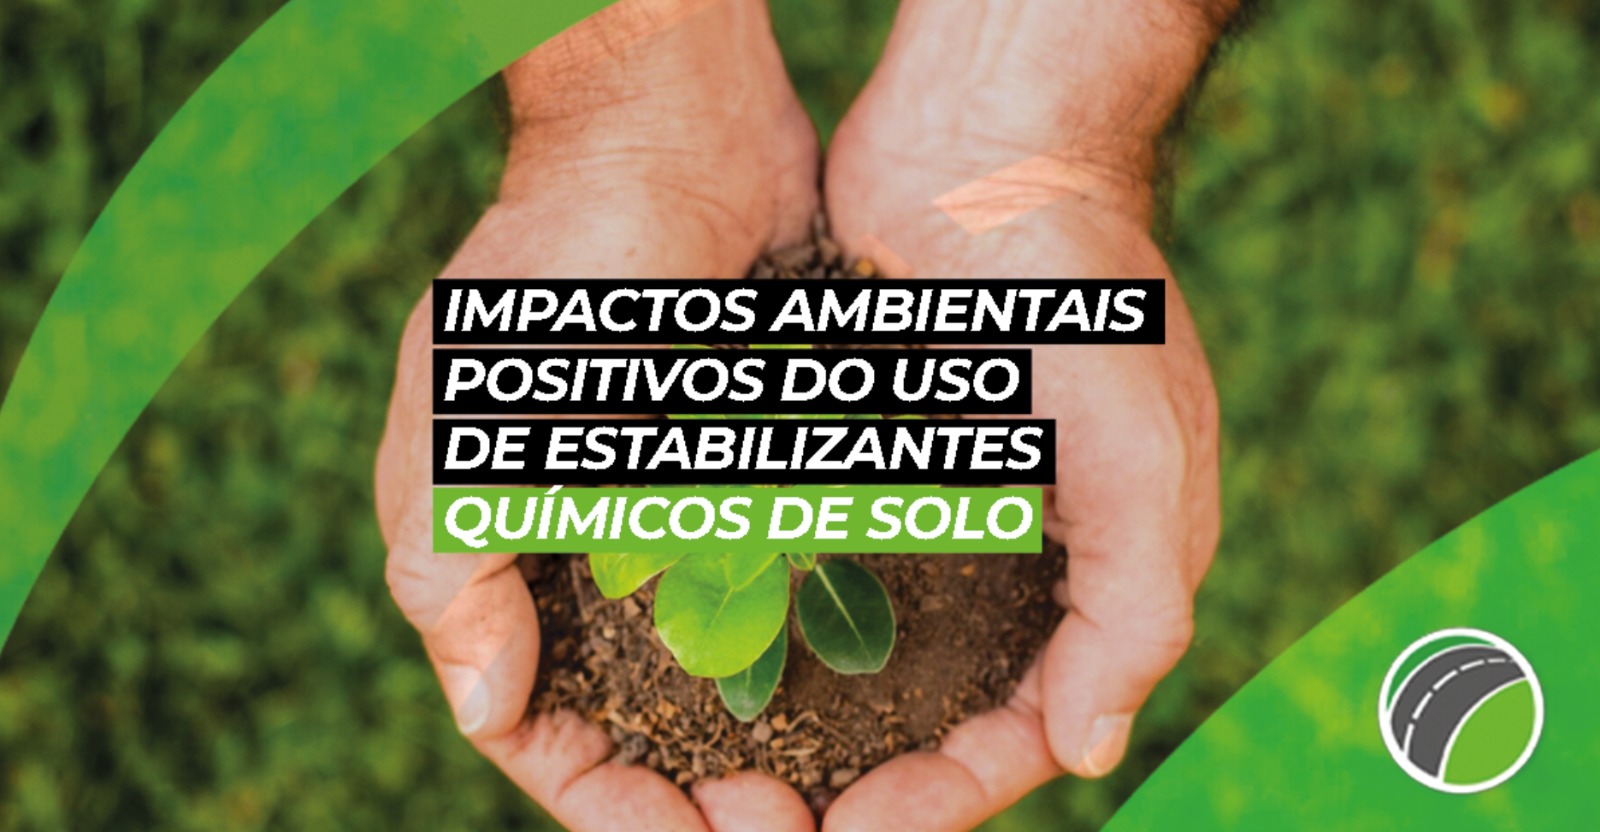 Impactos Ambientais Positivos do Uso de Estabilizantes Químicos de Solos: Contribuições para a Agenda de Sustentabilidade 2030 do Brasil